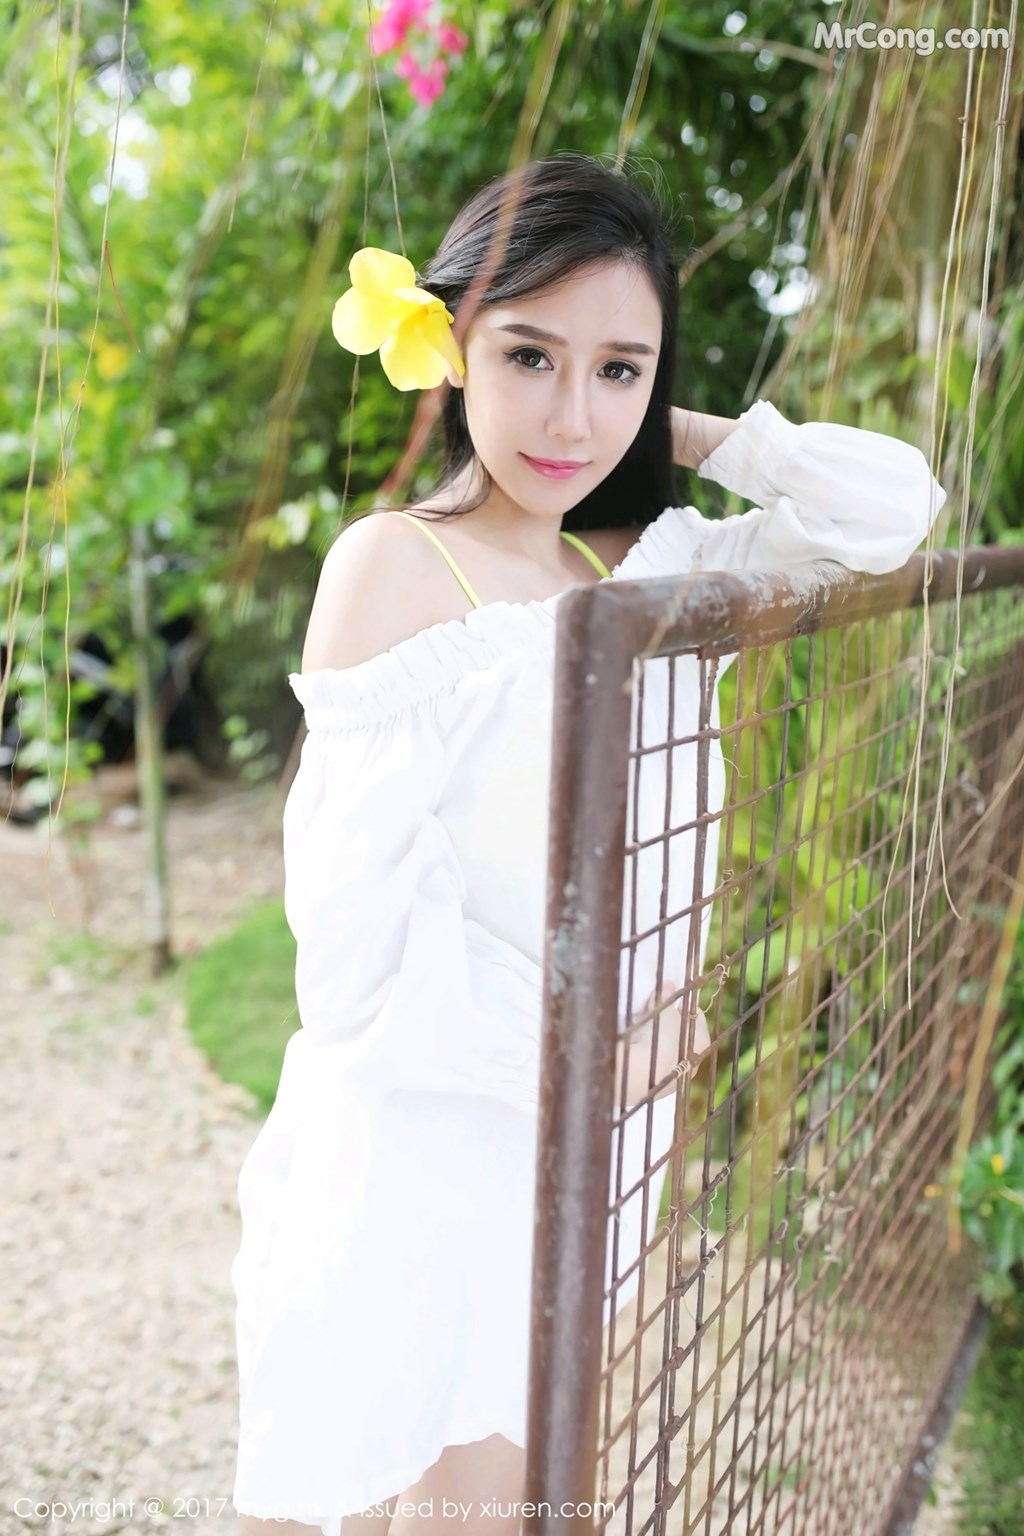 MyGirl Vol. 260: Model Yu Da Qiao (于 大 乔) (49 photos)